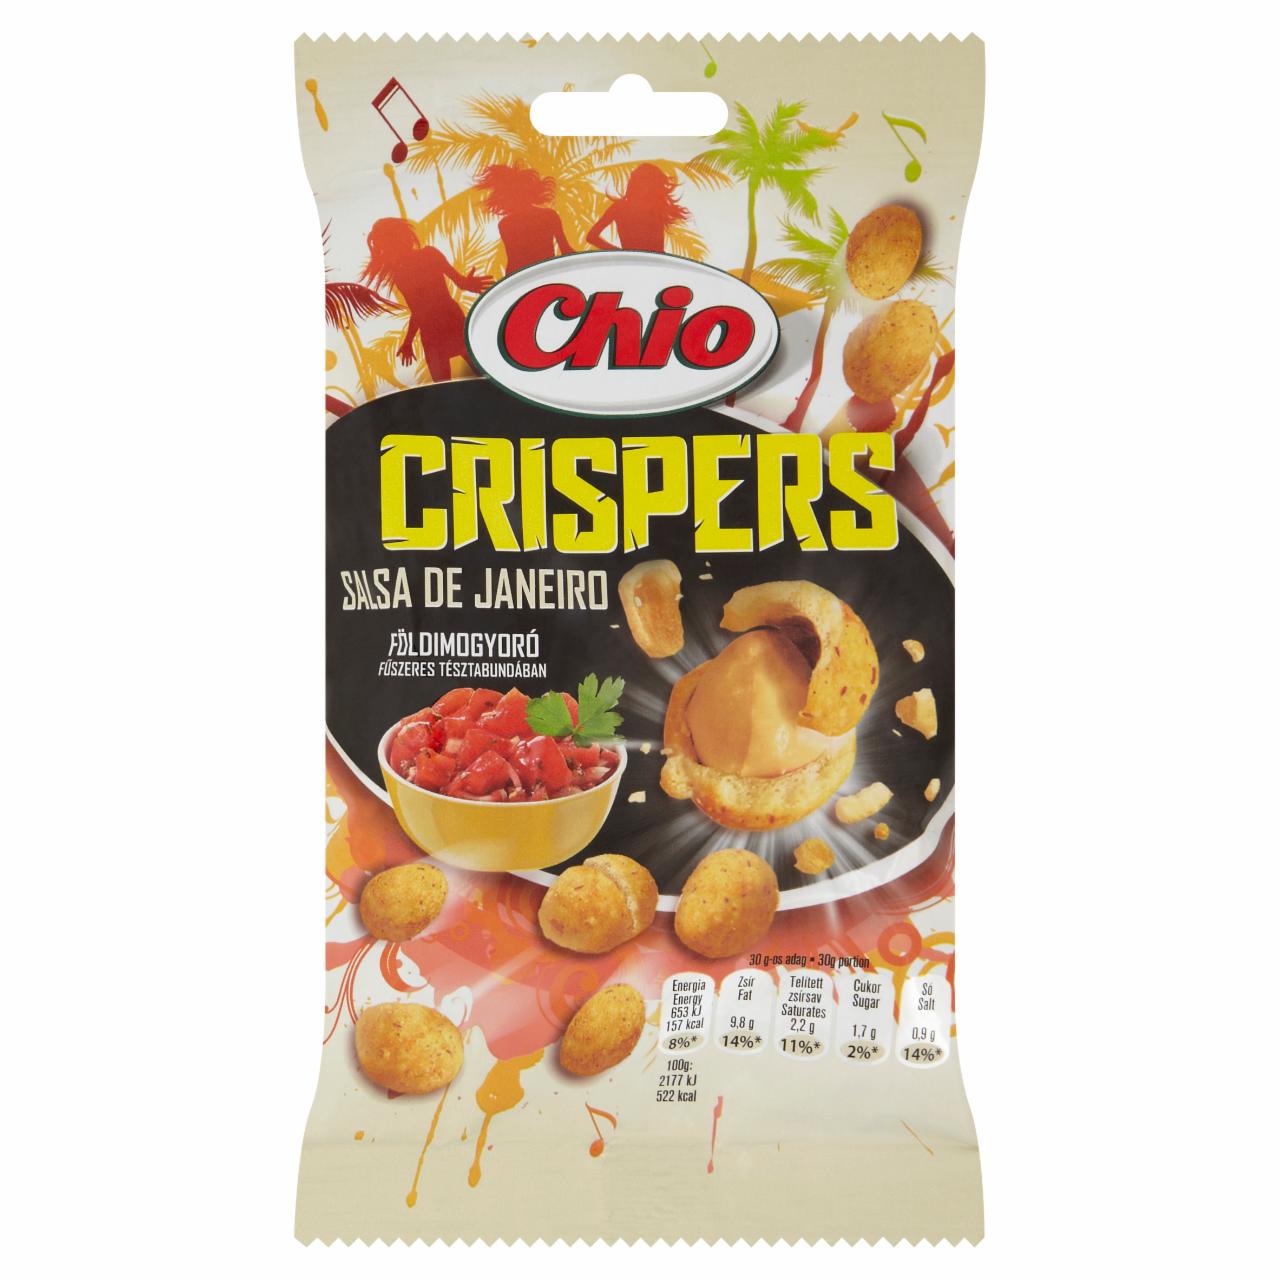 Képek - Chio Crispers Salsa De Janeiro földimogyoró fűszeres tésztabundában 60 g